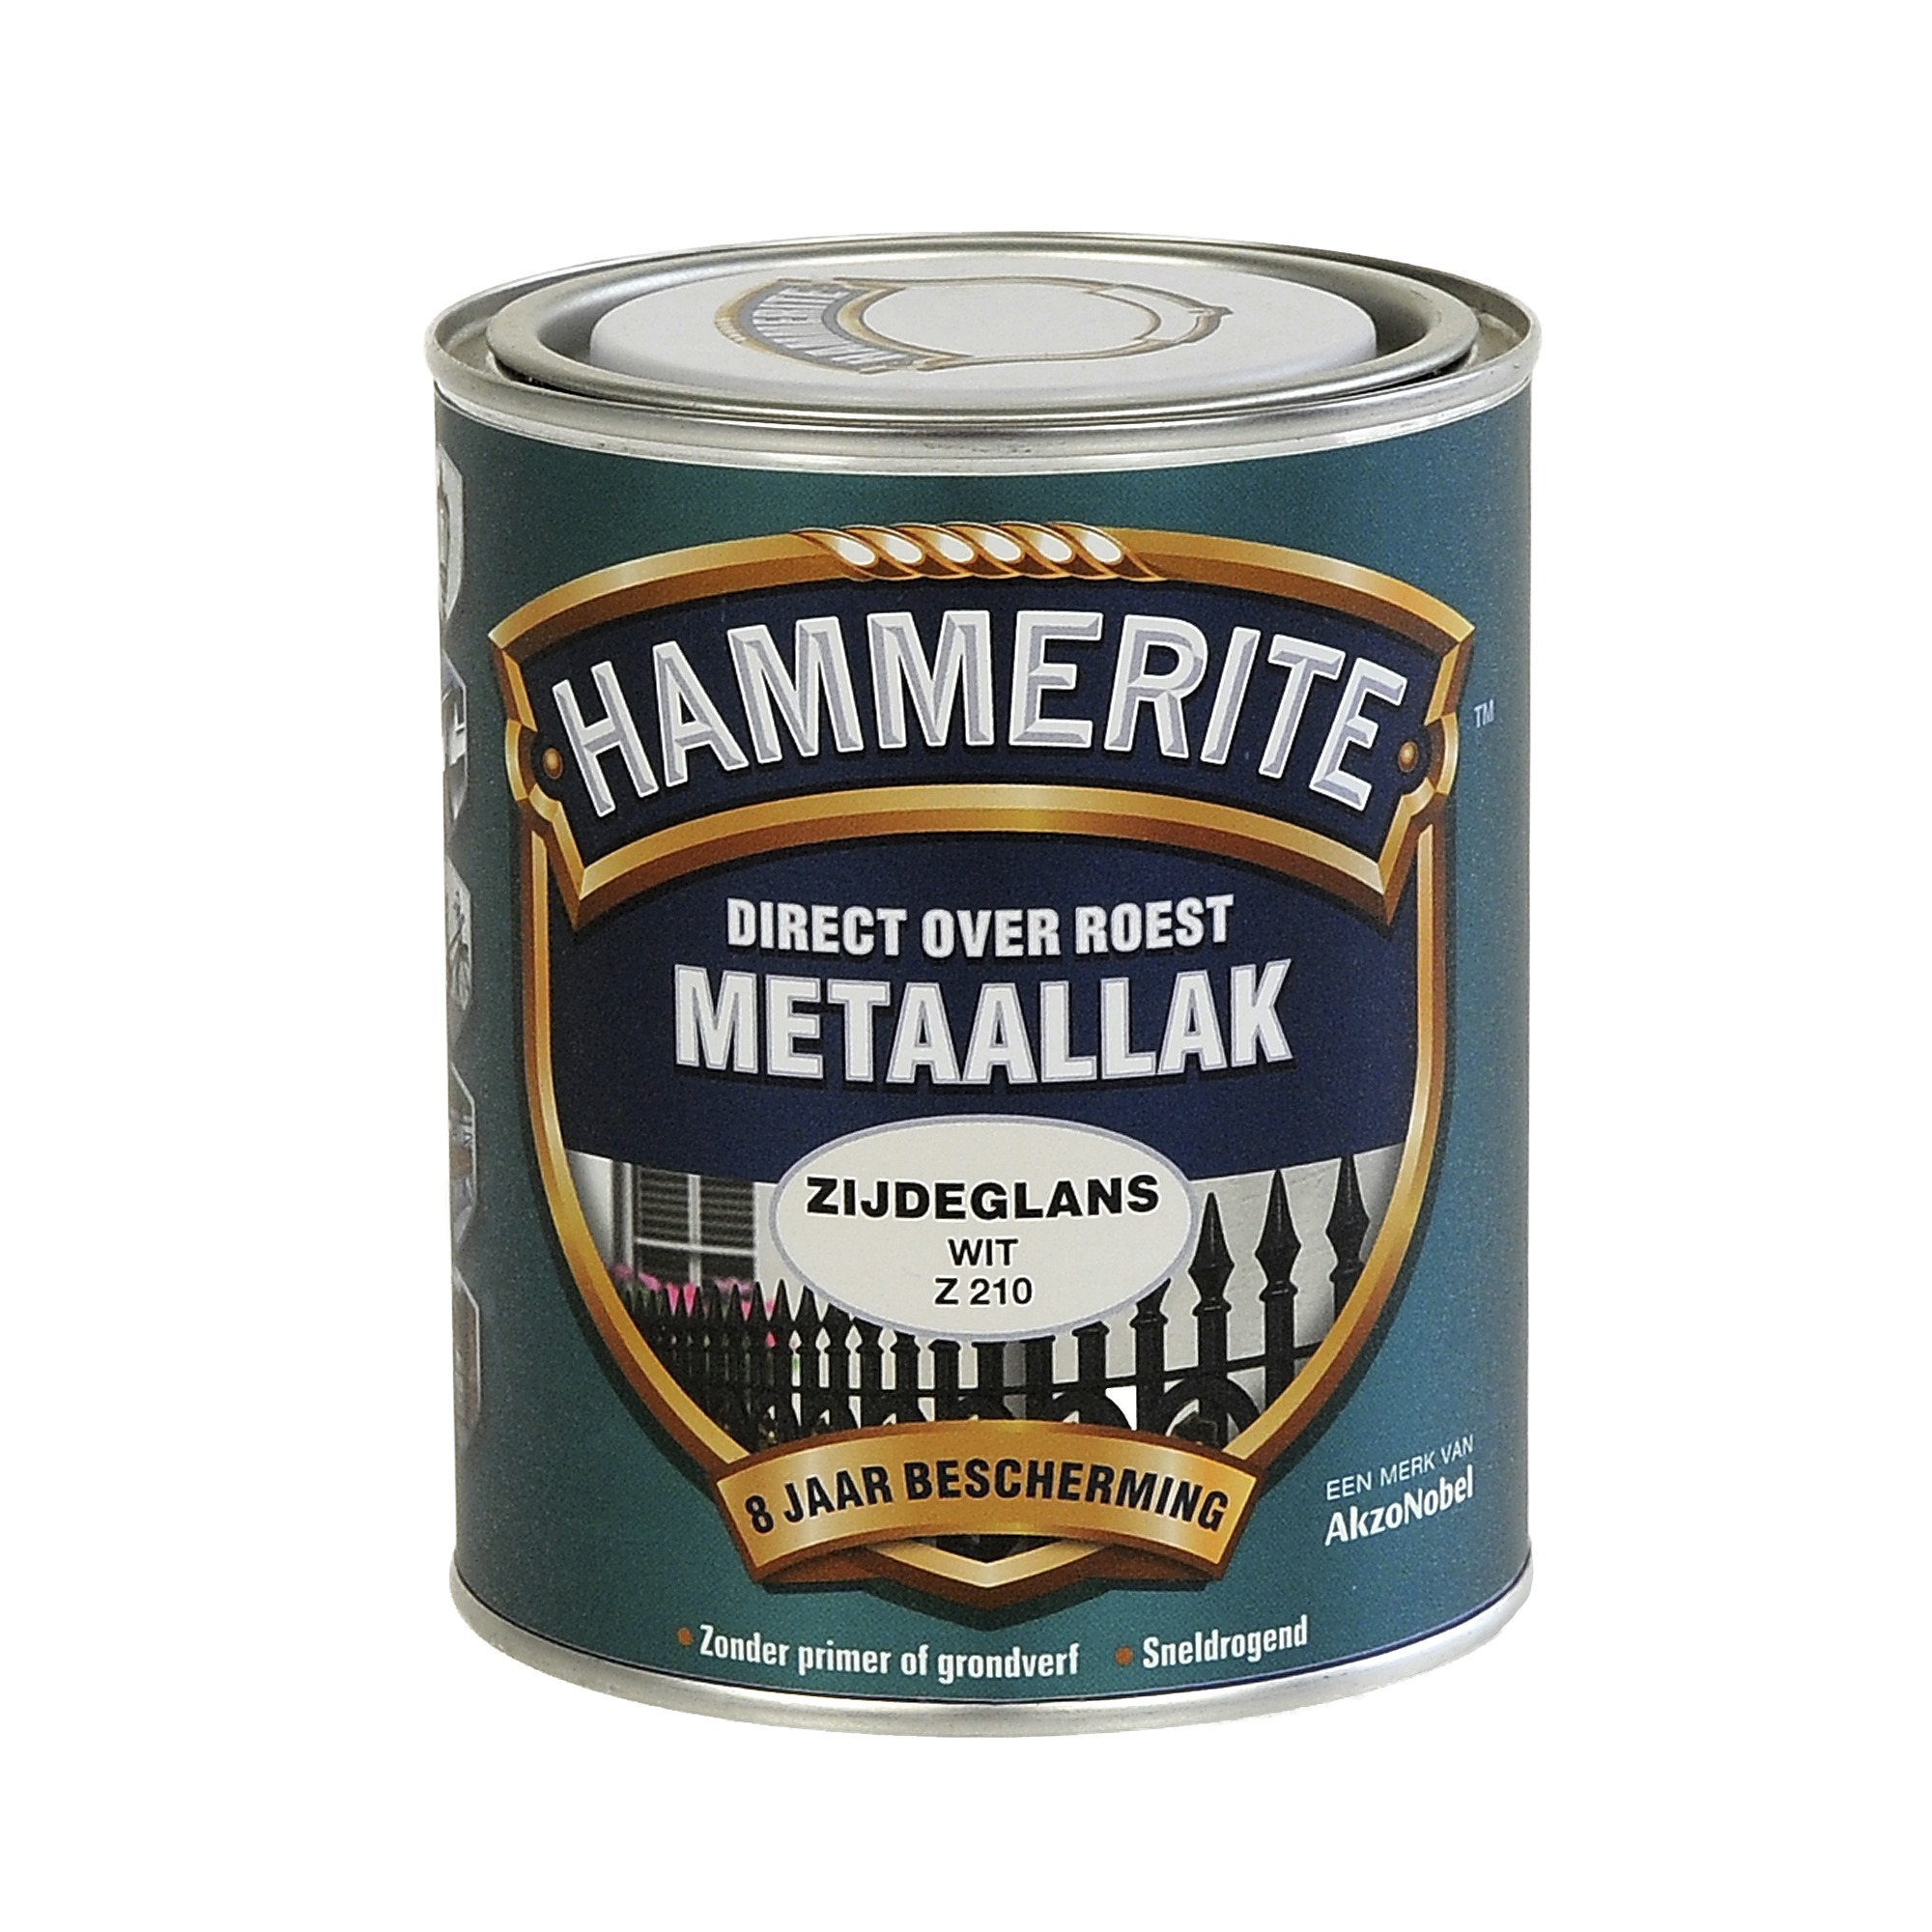 Hammerite direct over roest metaallak zijdeglans wit - 750 ml